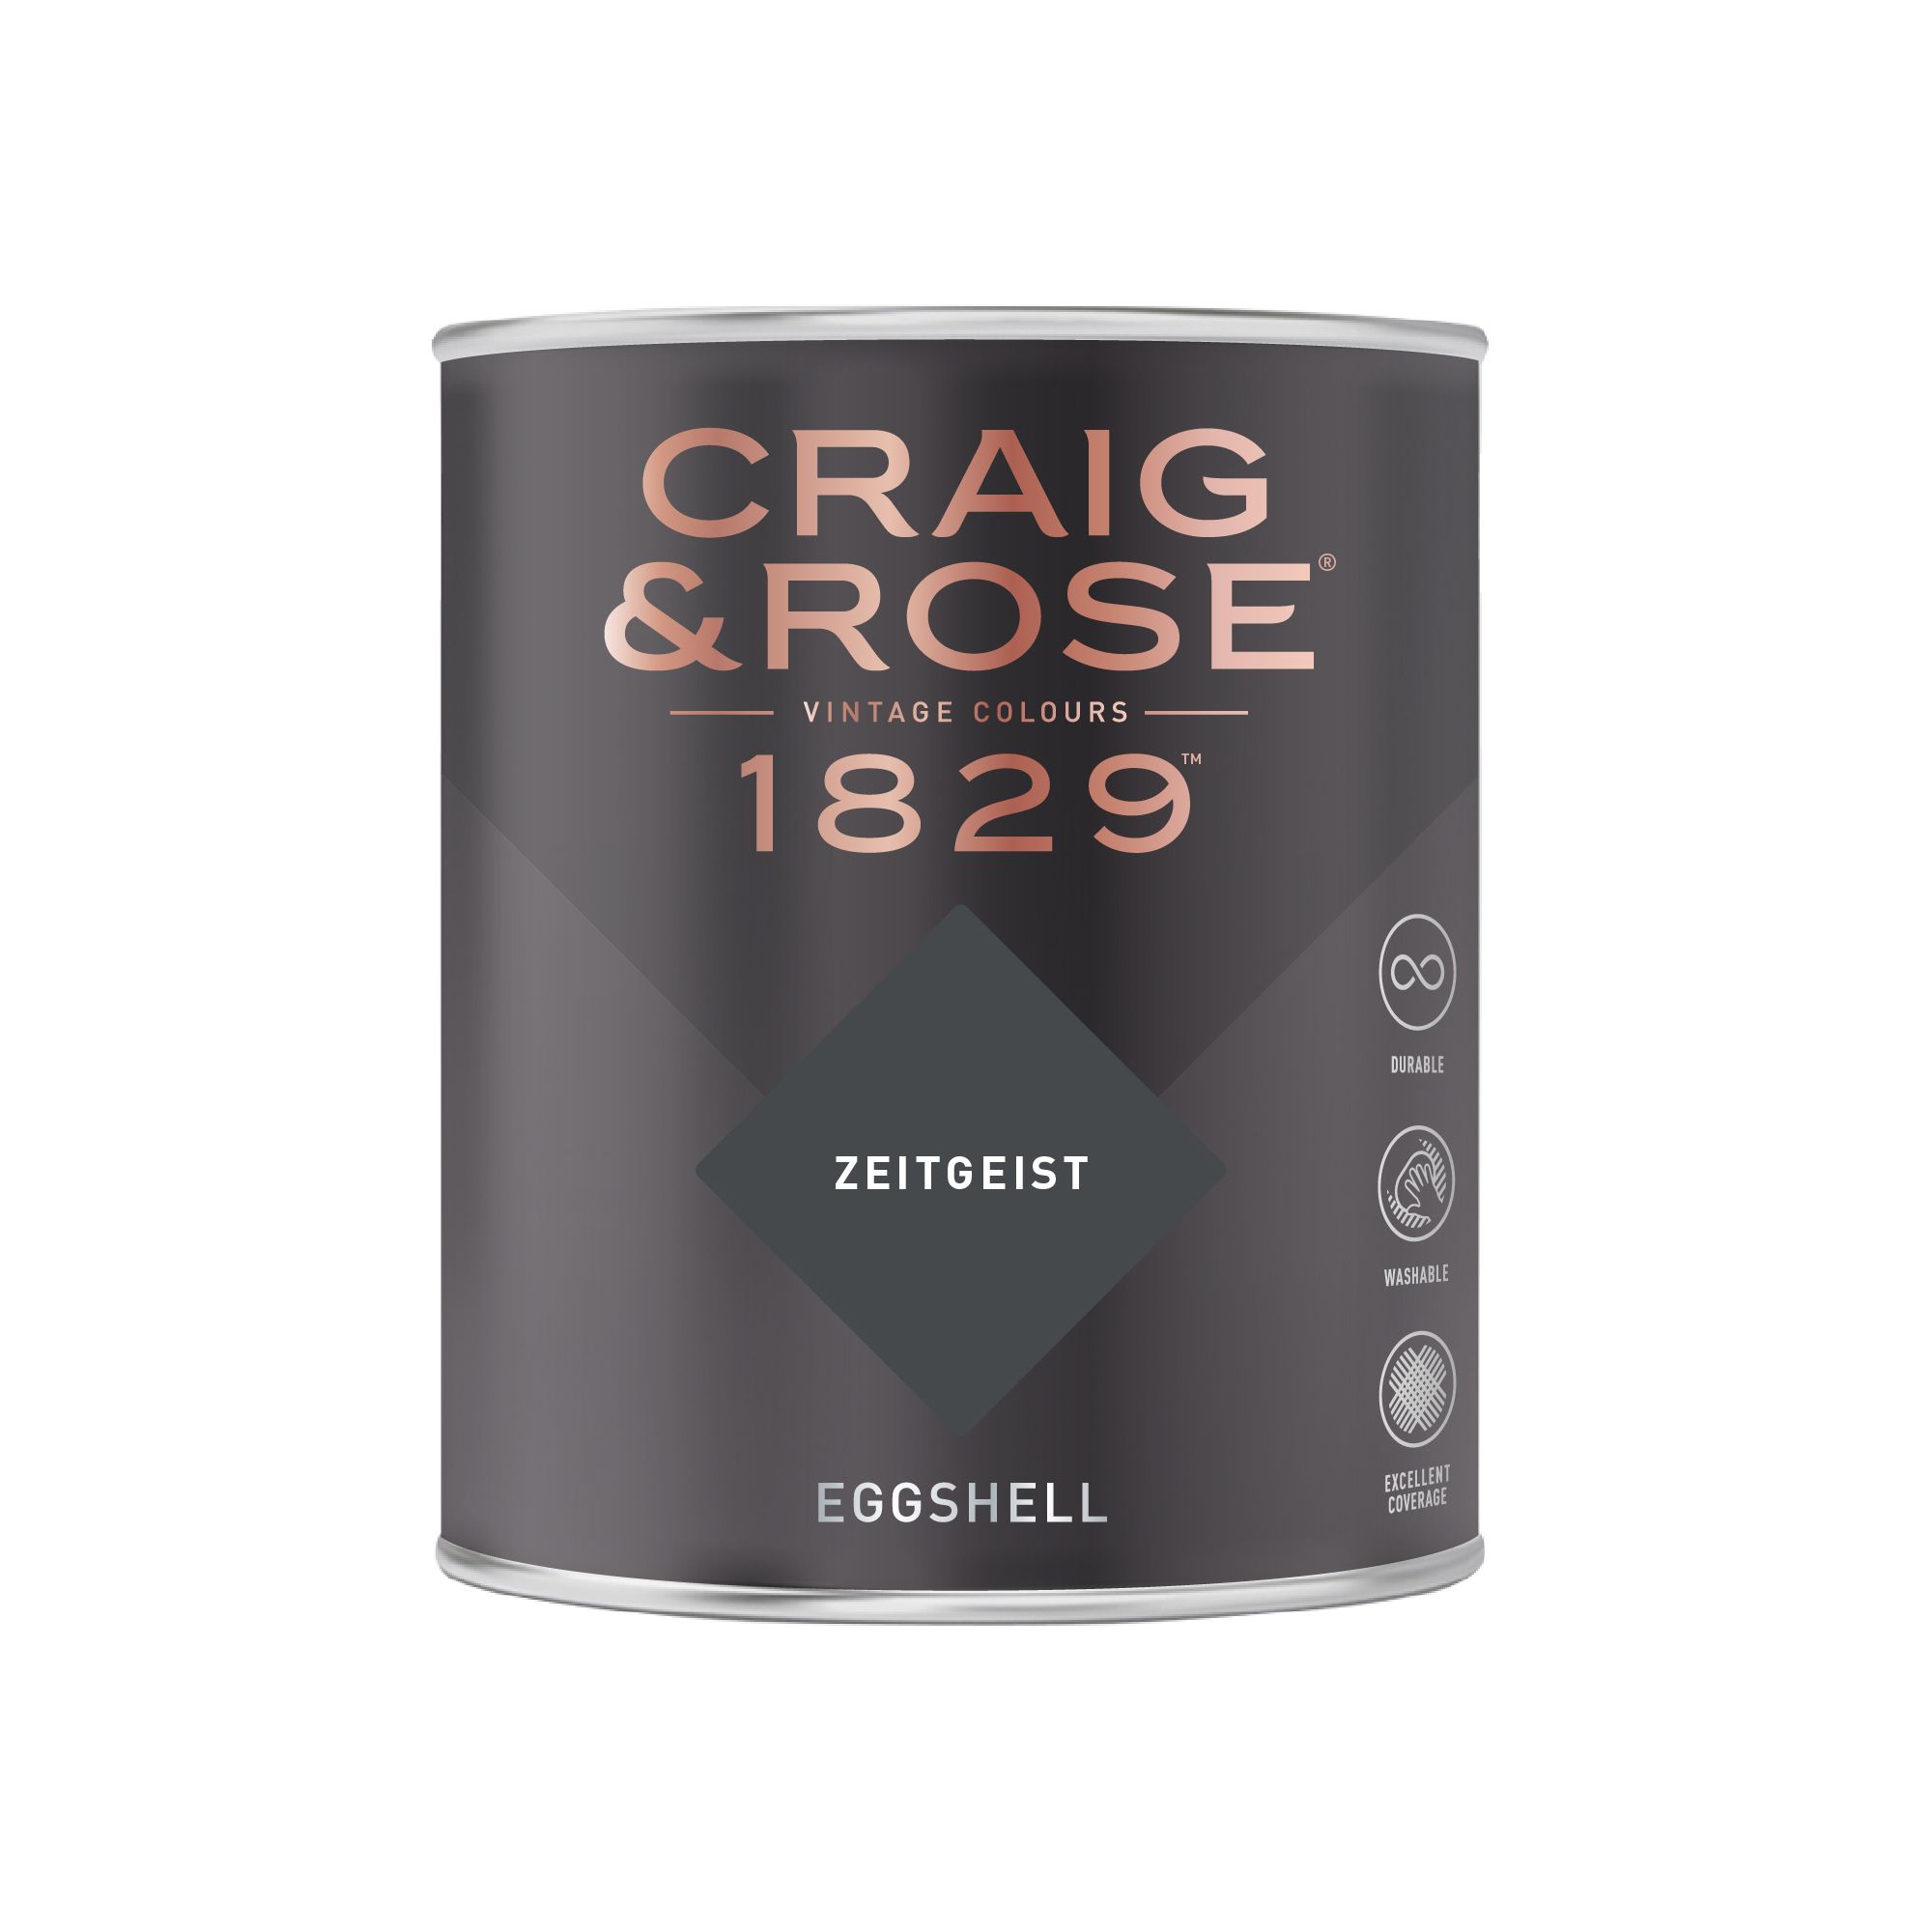 Craig & Rose 1829 Zeitgeist Eggshell Wall paint, 750ml